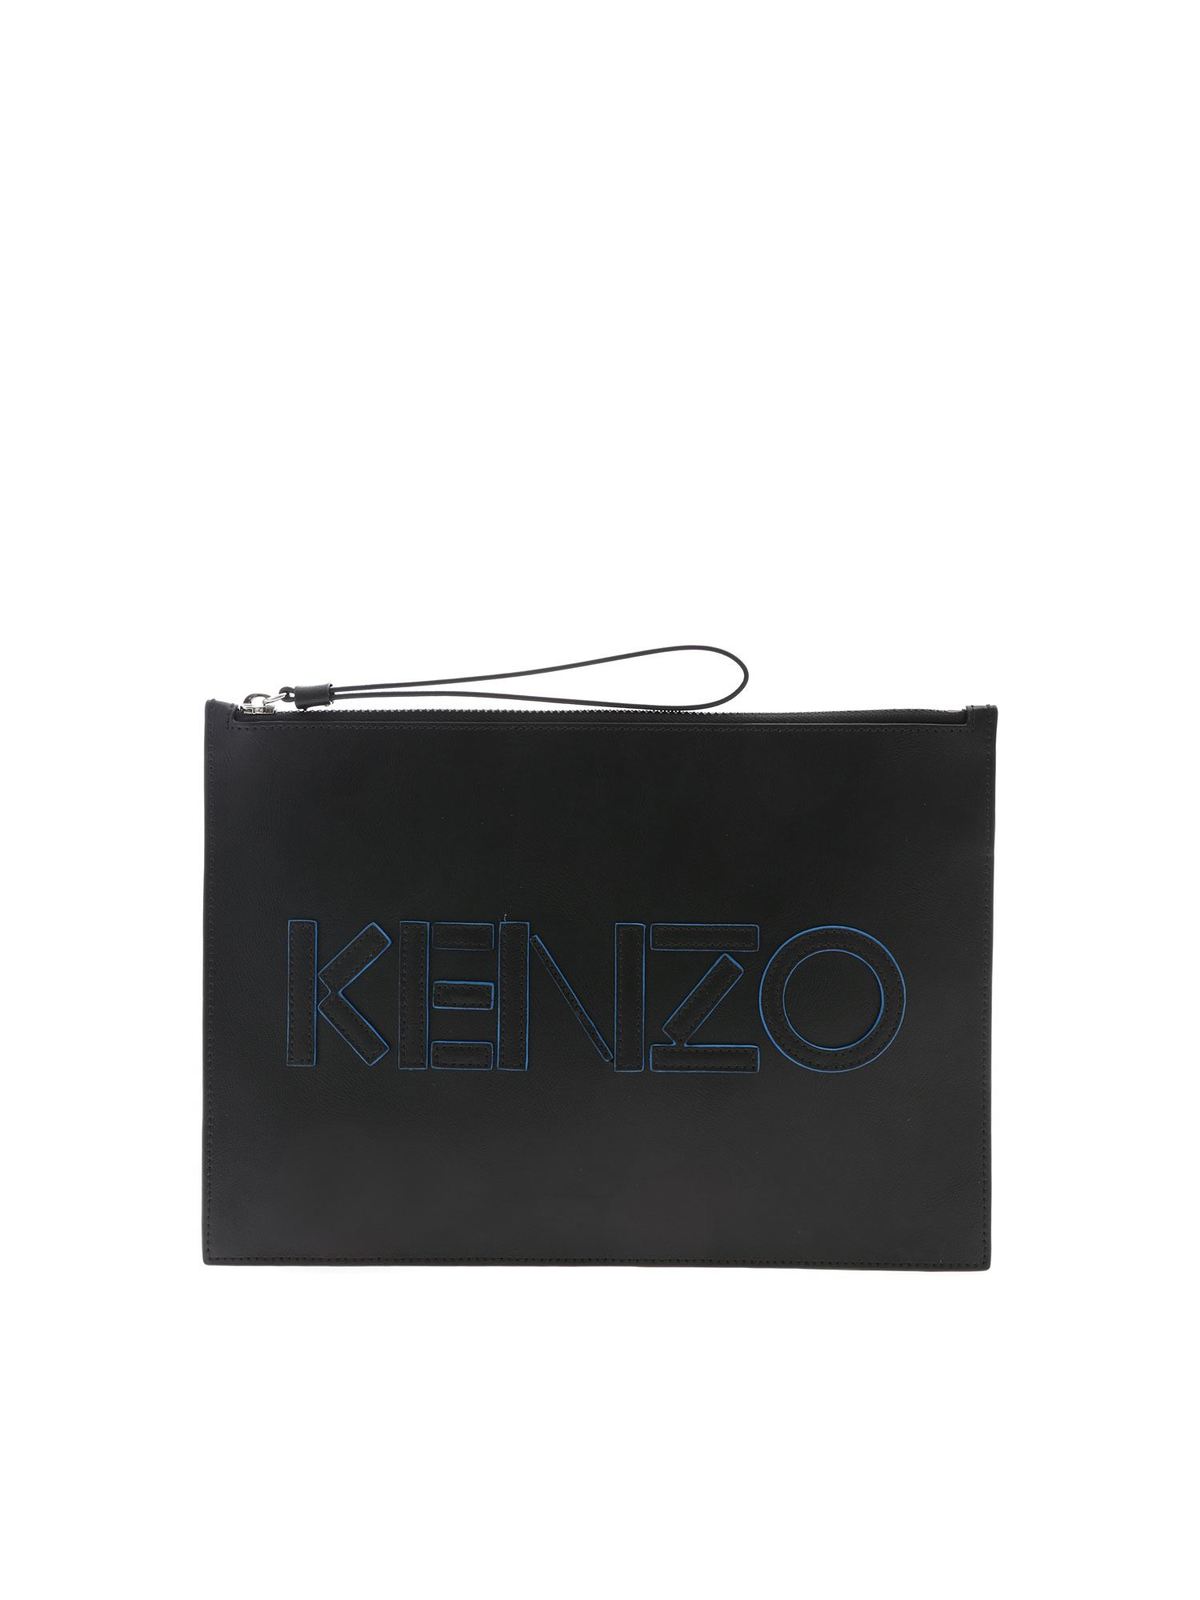 kenzo black clutch